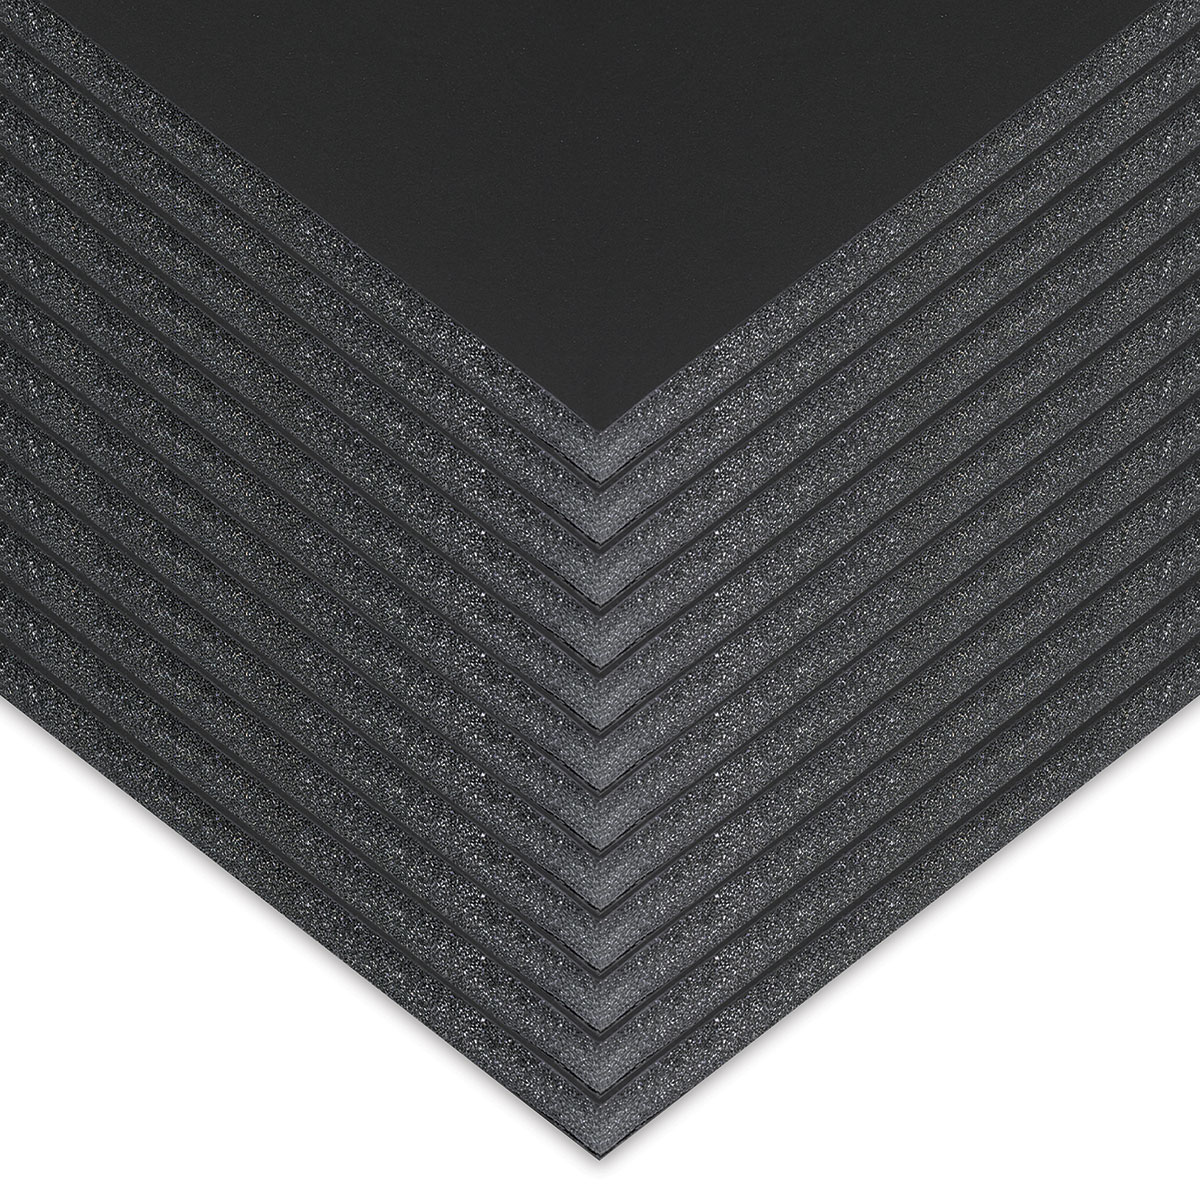 Black Foam Board – Rileystreet Art Supply